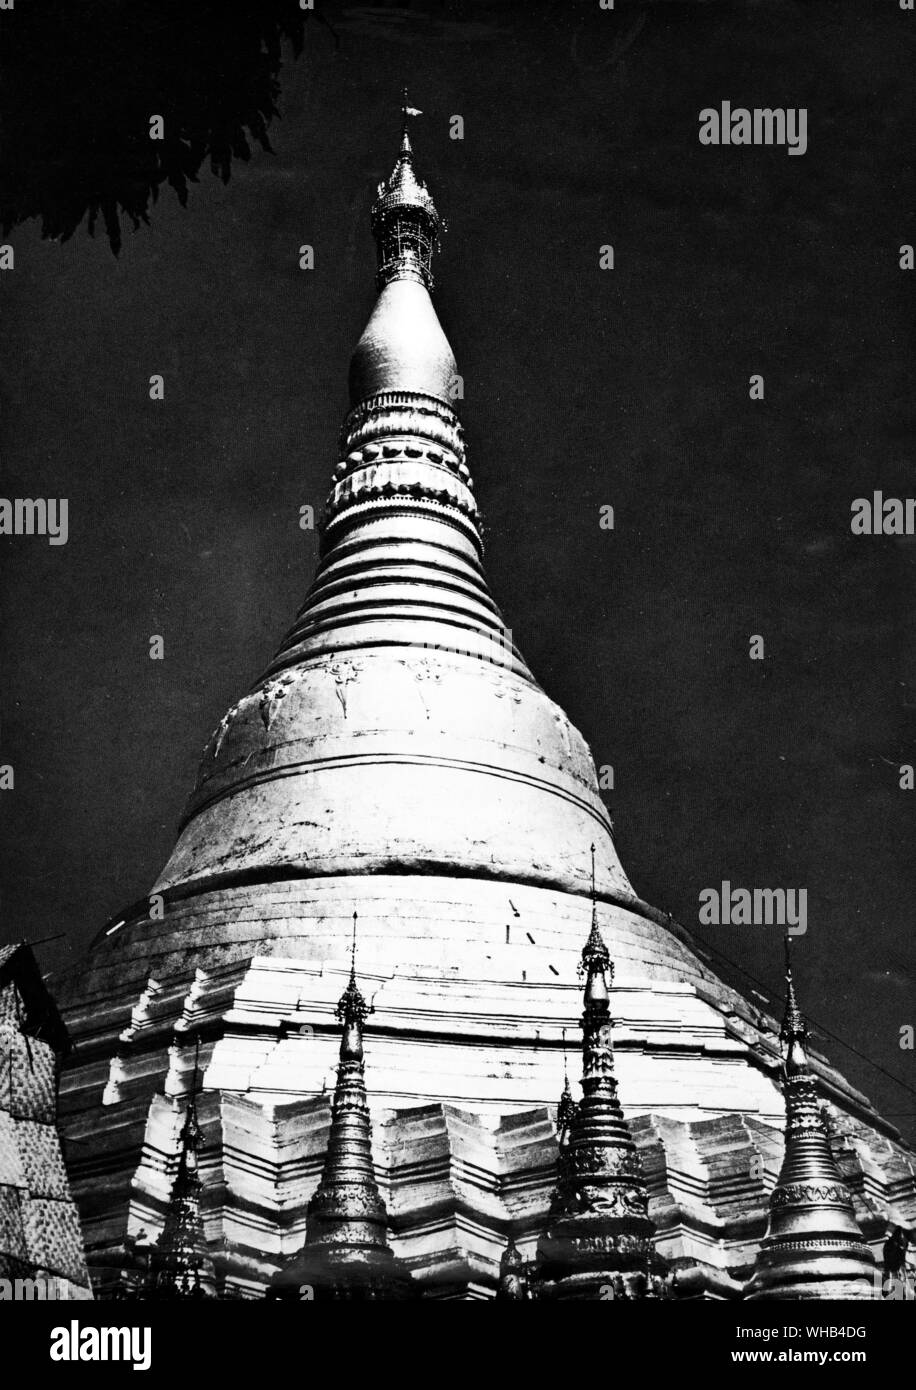 Die Shawa Dragon Pagode in Rangun -. Die majestätischen Shwedagon (Golden) Dagon Pagode, Rangun, Myanmar Rangun, dominiert die Skyline von jedem Aussichtspunkt. Für burmesische Buddhisten Dies ist die heiligste aller Websites in Myanmar, das alle birmanischen mindestens einmal in ihrem Leben besuchen Sie anstreben. Die Legende besagt, dass die shwedagon gebaut wurde zu 8 Haare des Buddha Haus. diesen Rest in eine Kammer unter einer goldenen Tafel unter dem großen goldenen Stupa (Dome). Die goldenen Stupa erhebt sich 98 m und ist solide in Bau. Es wird angenommen, dass durch die Mon Leute zwischen dem 6. und 10. gebaut worden zu sein Stockfoto